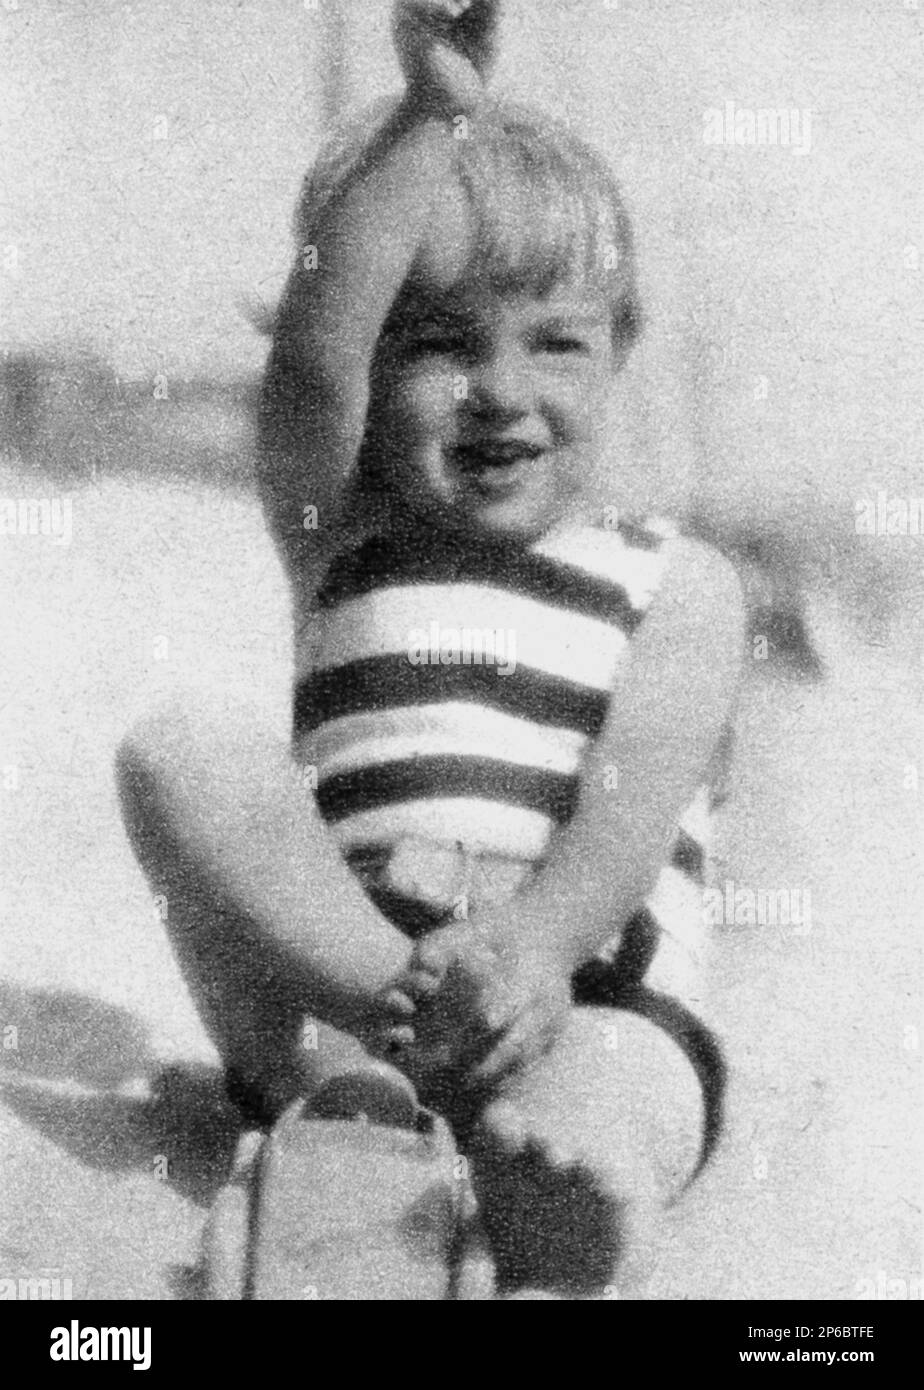 1928 CA, USA : la petite MARILYN MONROE ( 1926 - 1962 ) quand était un petit bébé - CINÉMA - FILM - personalità celebi da giovani giovane - célébrités personnalités acteurs quand était jeune - bébé - spiaggia - plage - sourire - sorriso --- Archivio GBB Banque D'Images